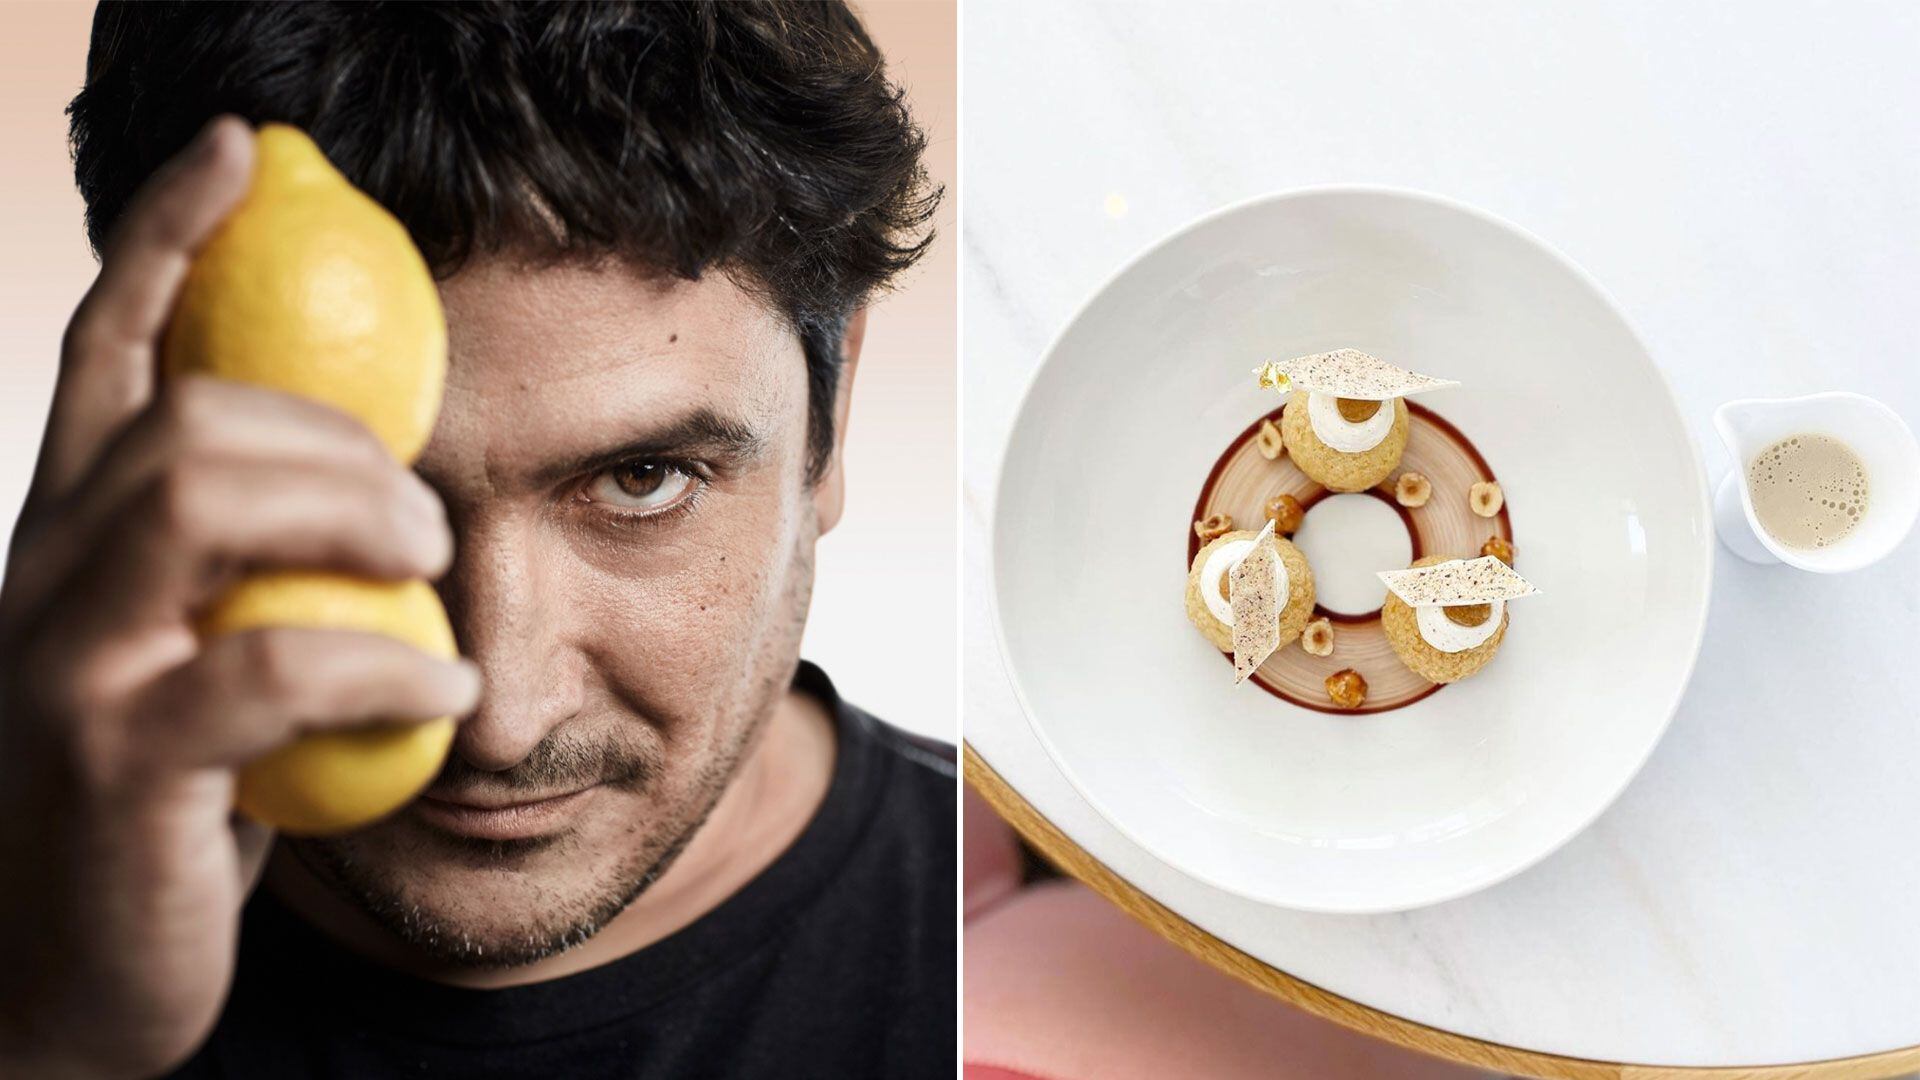 La prestigiosa guía gastronómica Michelin Francia premió en 2022 al nuevo restaurante del chef argentino Mauro Colagreco, el Ceto, la segunda recompensa después de haberse llevado tres estrellas en 2019 por otro de sus establecimientos en suelo galo, el Mirazur